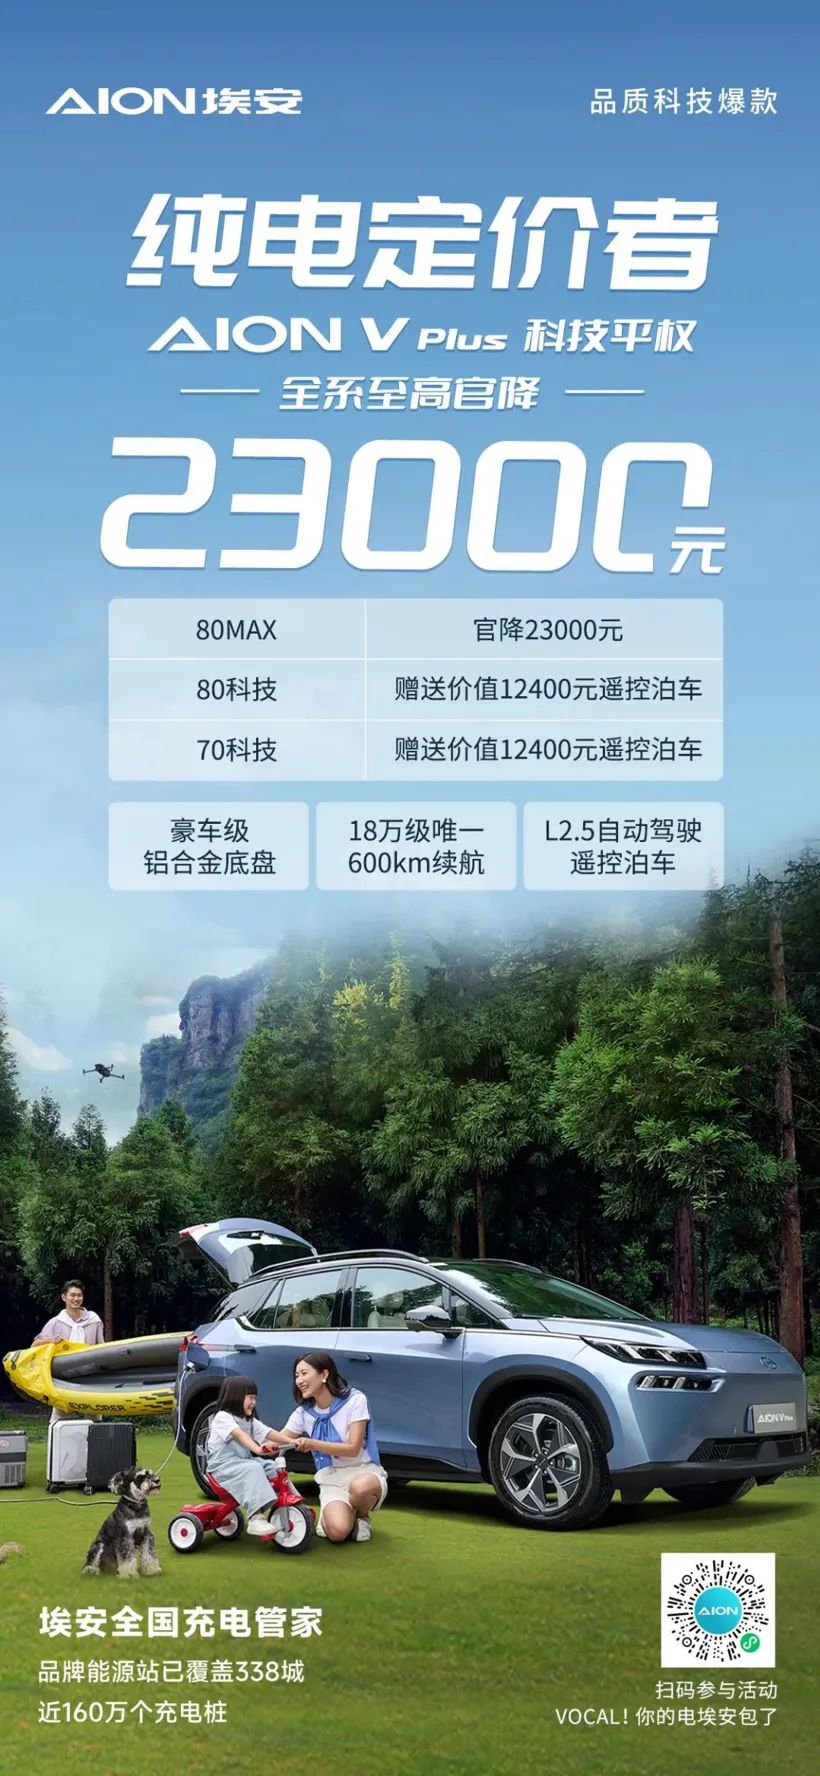 ស៊េរី GAC Aion V Plus ទាំងអស់មានតម្លៃ RMB 23,000 សម្រាប់តម្លៃផ្លូវការខ្ពស់បំផុត